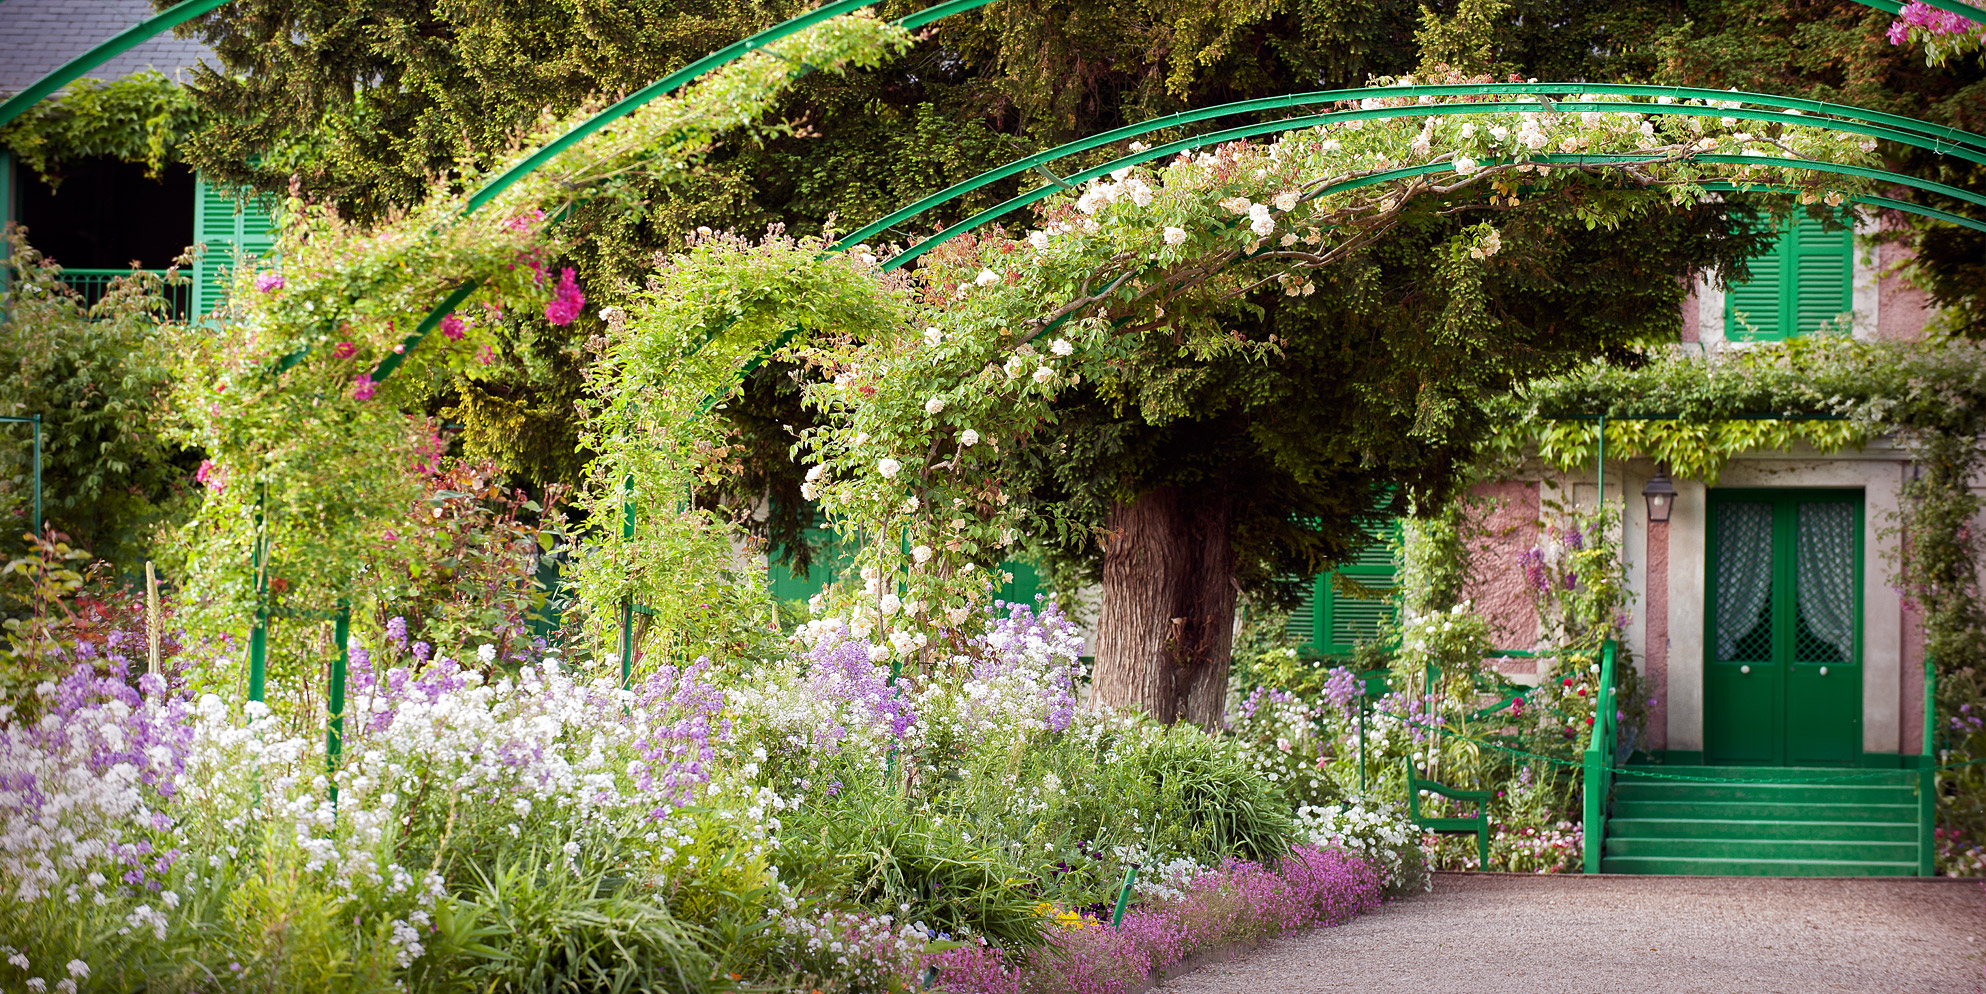 Сады и время - 6. Королевские Ботанические сады Кью - страсти по живописности. Вечер у Шекспира